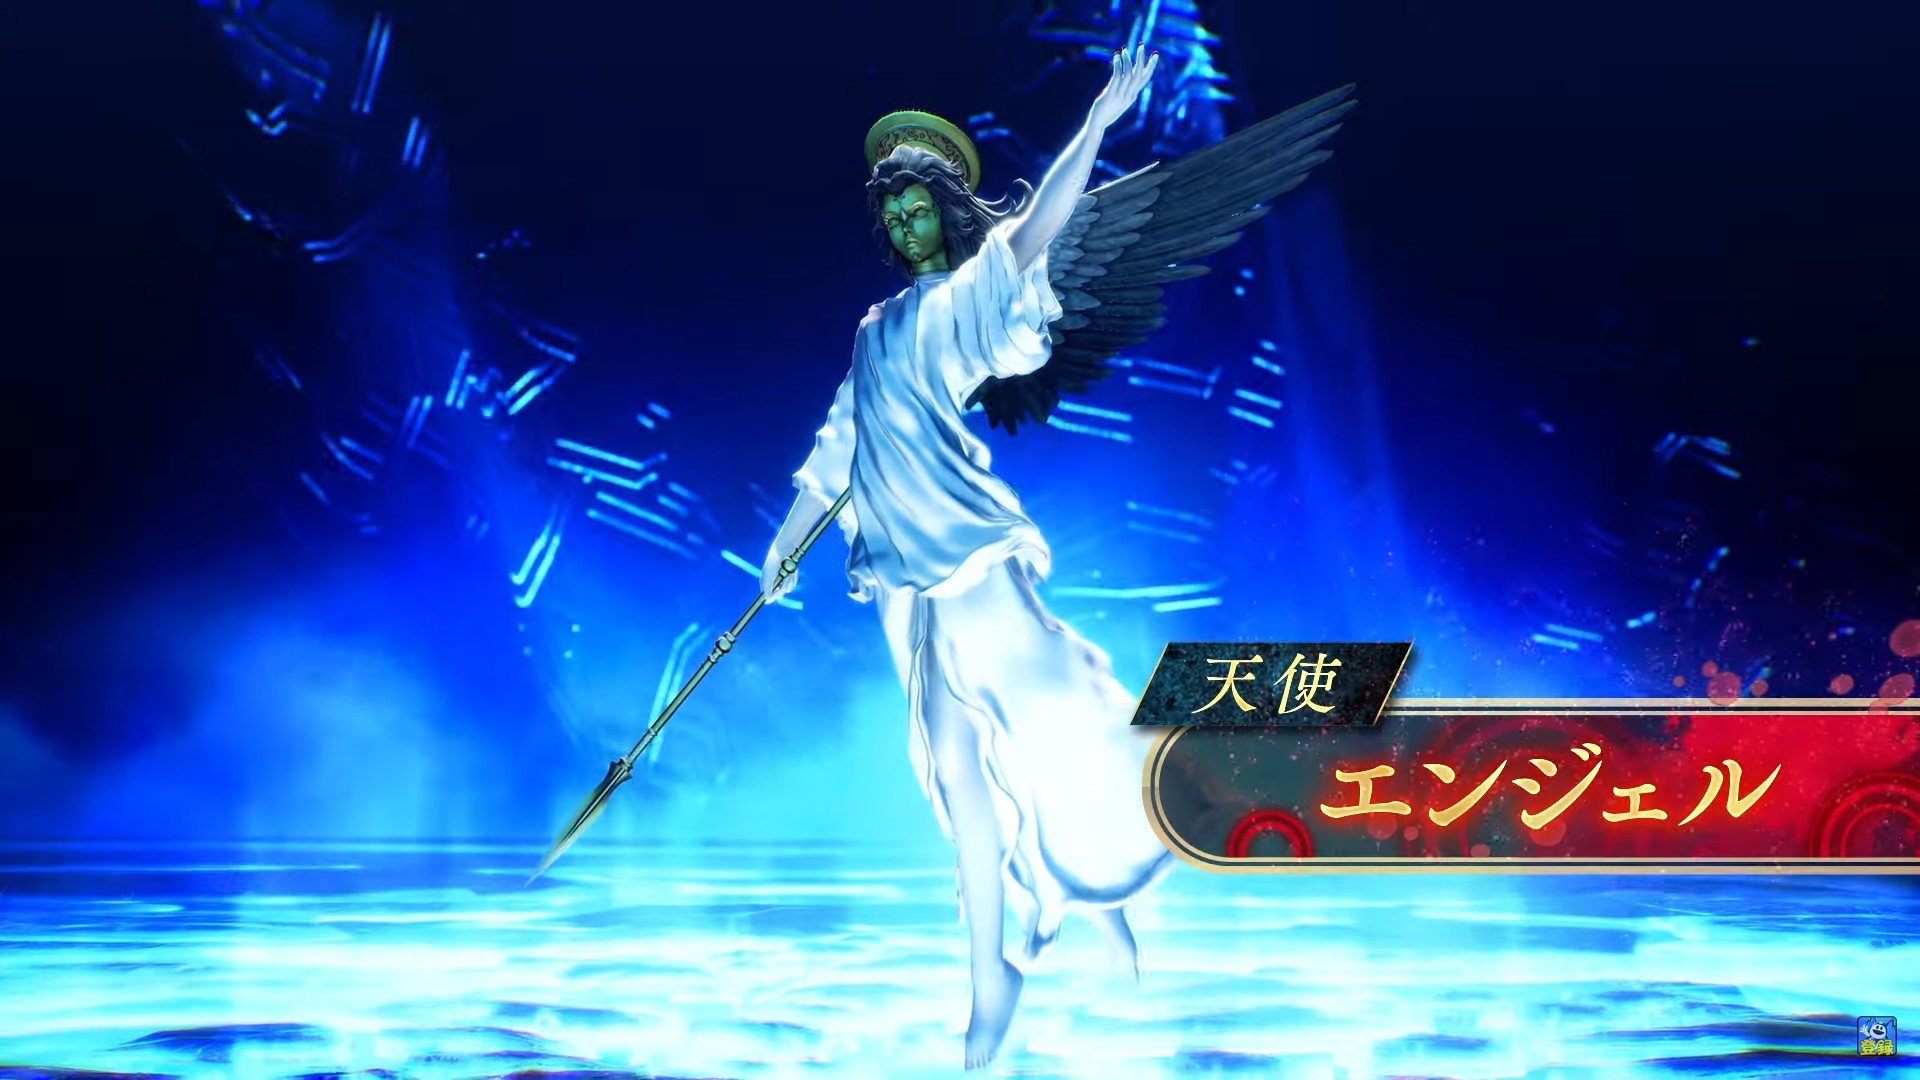 Shin Megami Tensei V Vengeance Daily Demon Vol. 036 Shows Angel - PSLegends